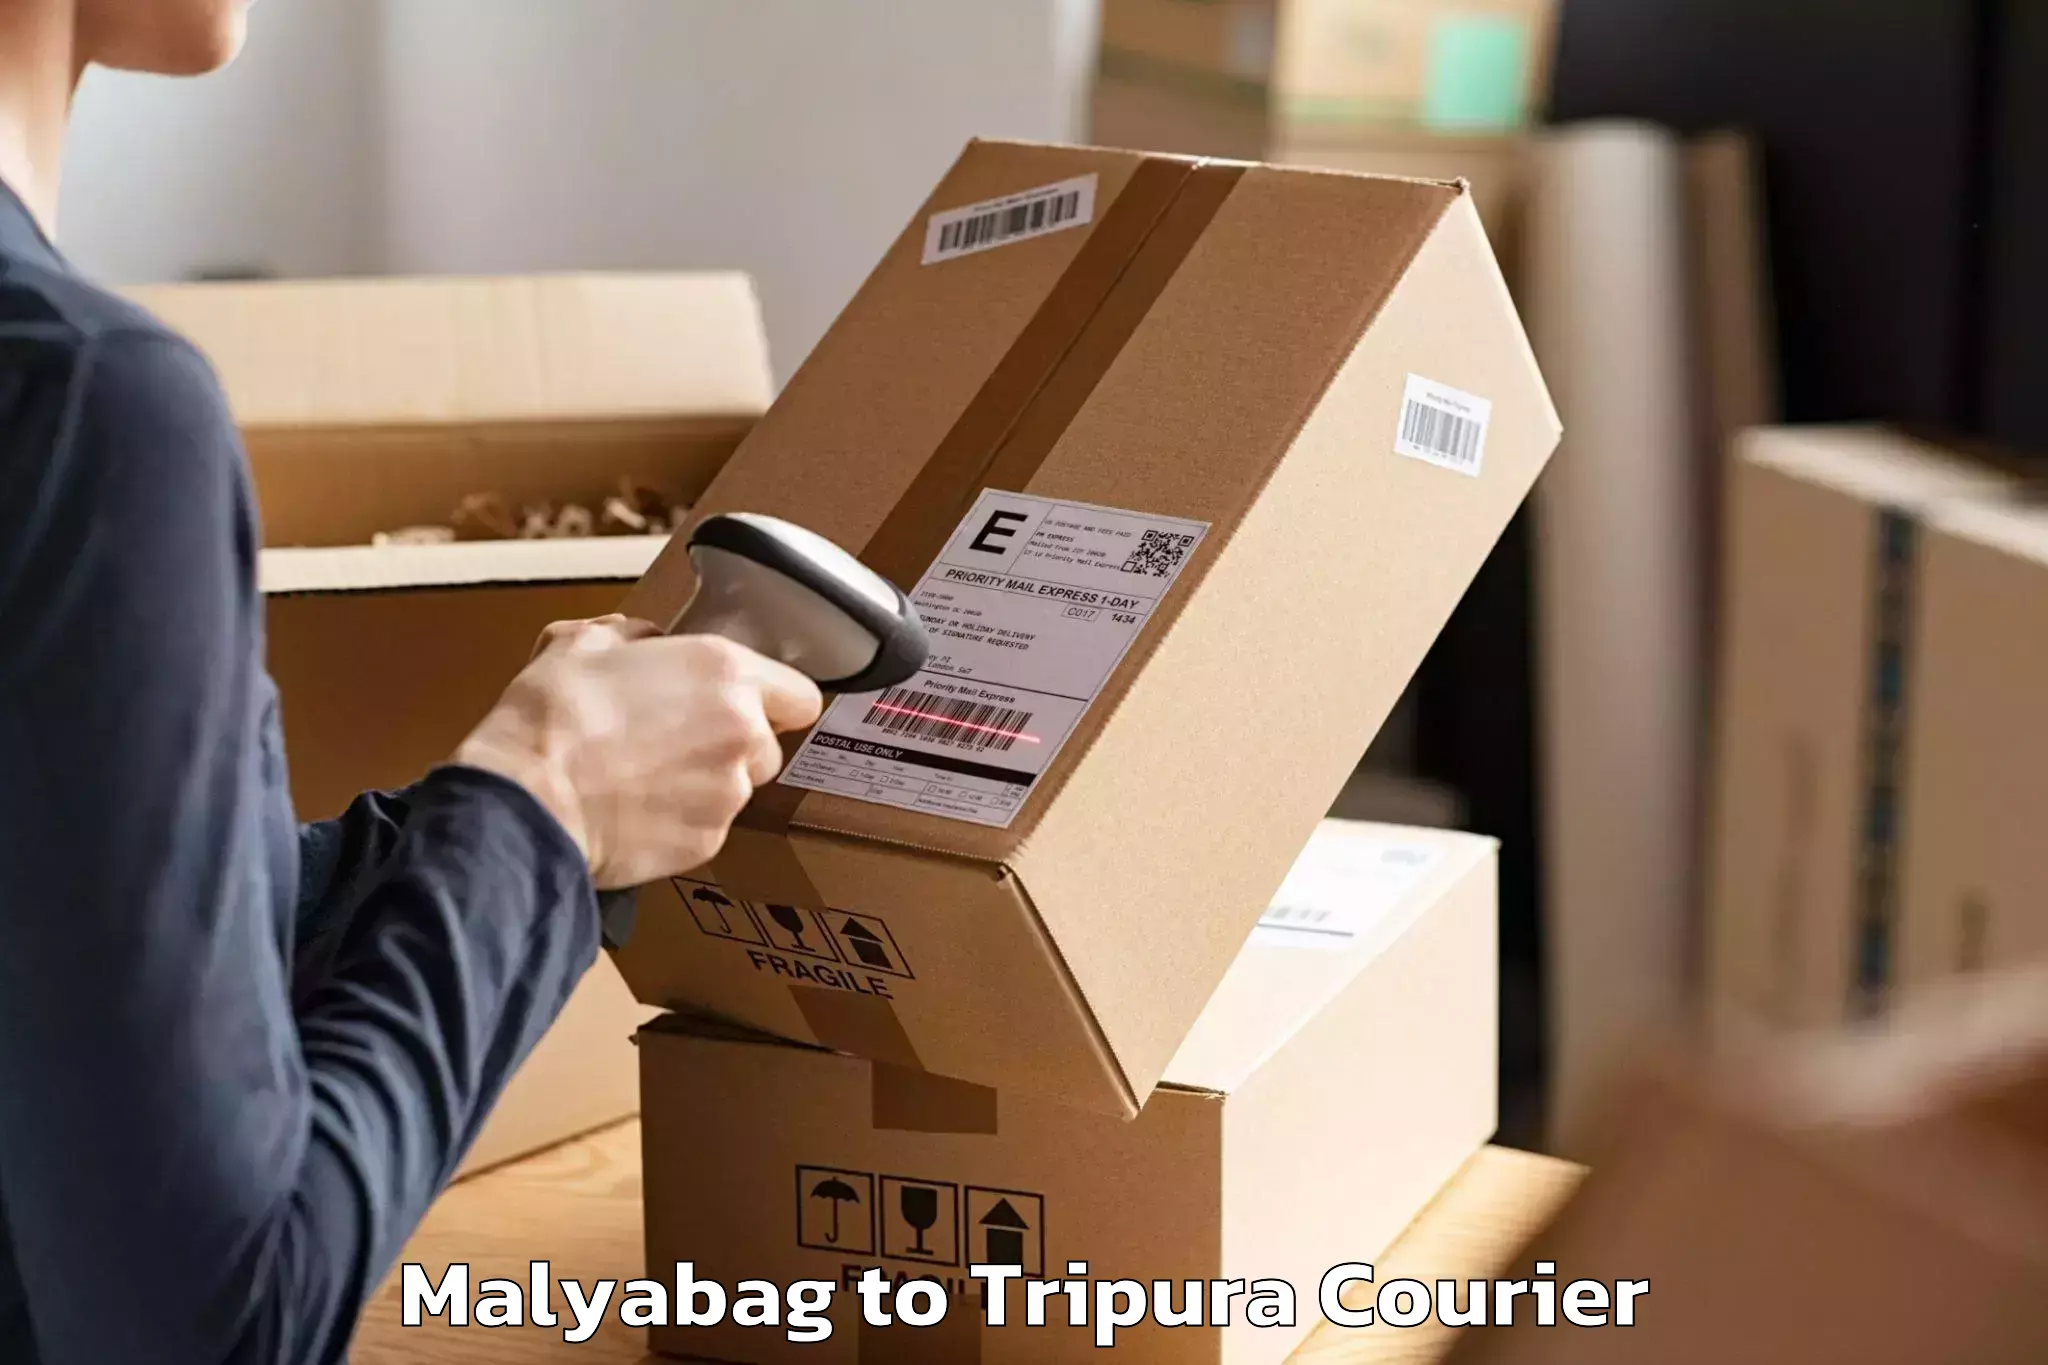 Furniture moving plans Malyabag to Udaipur Tripura